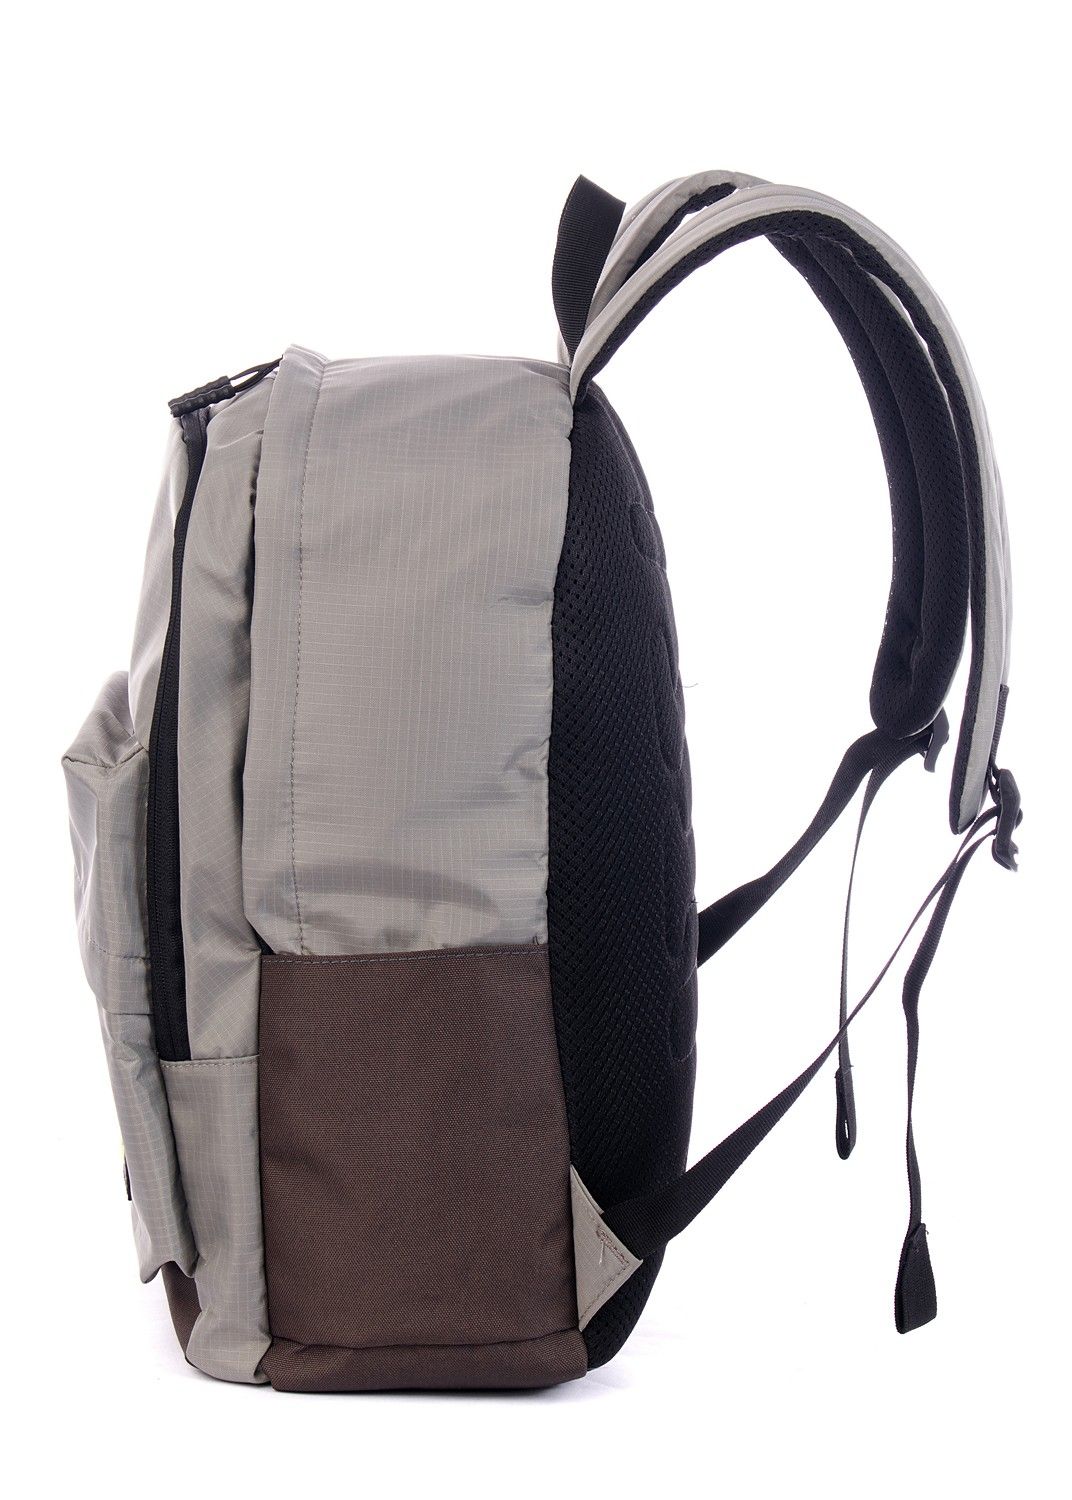 Рюкзак мужской светло-серый, однотонный, городской, с широкими лямками, 20л.